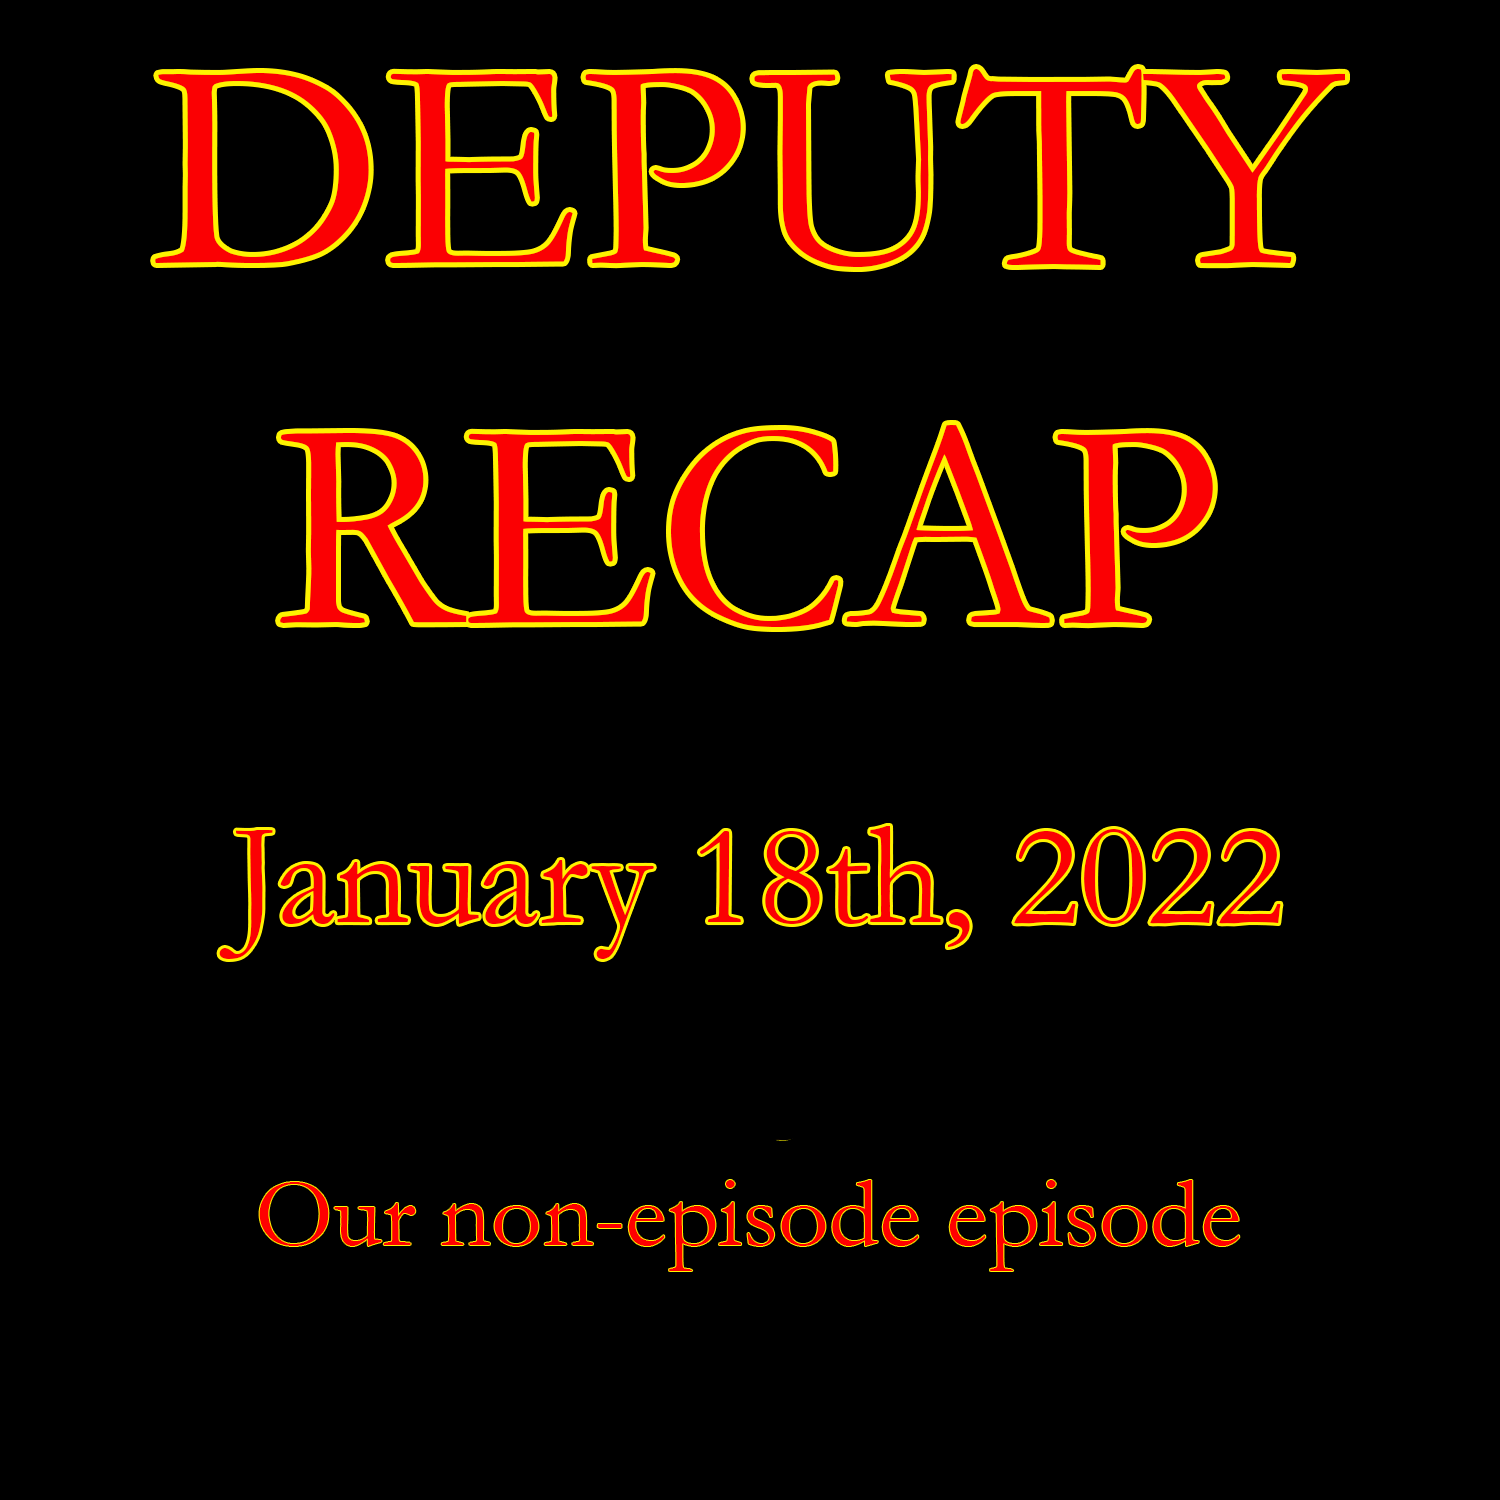 Movie Recap - January 18th, 2022 (Our non-episode episode)